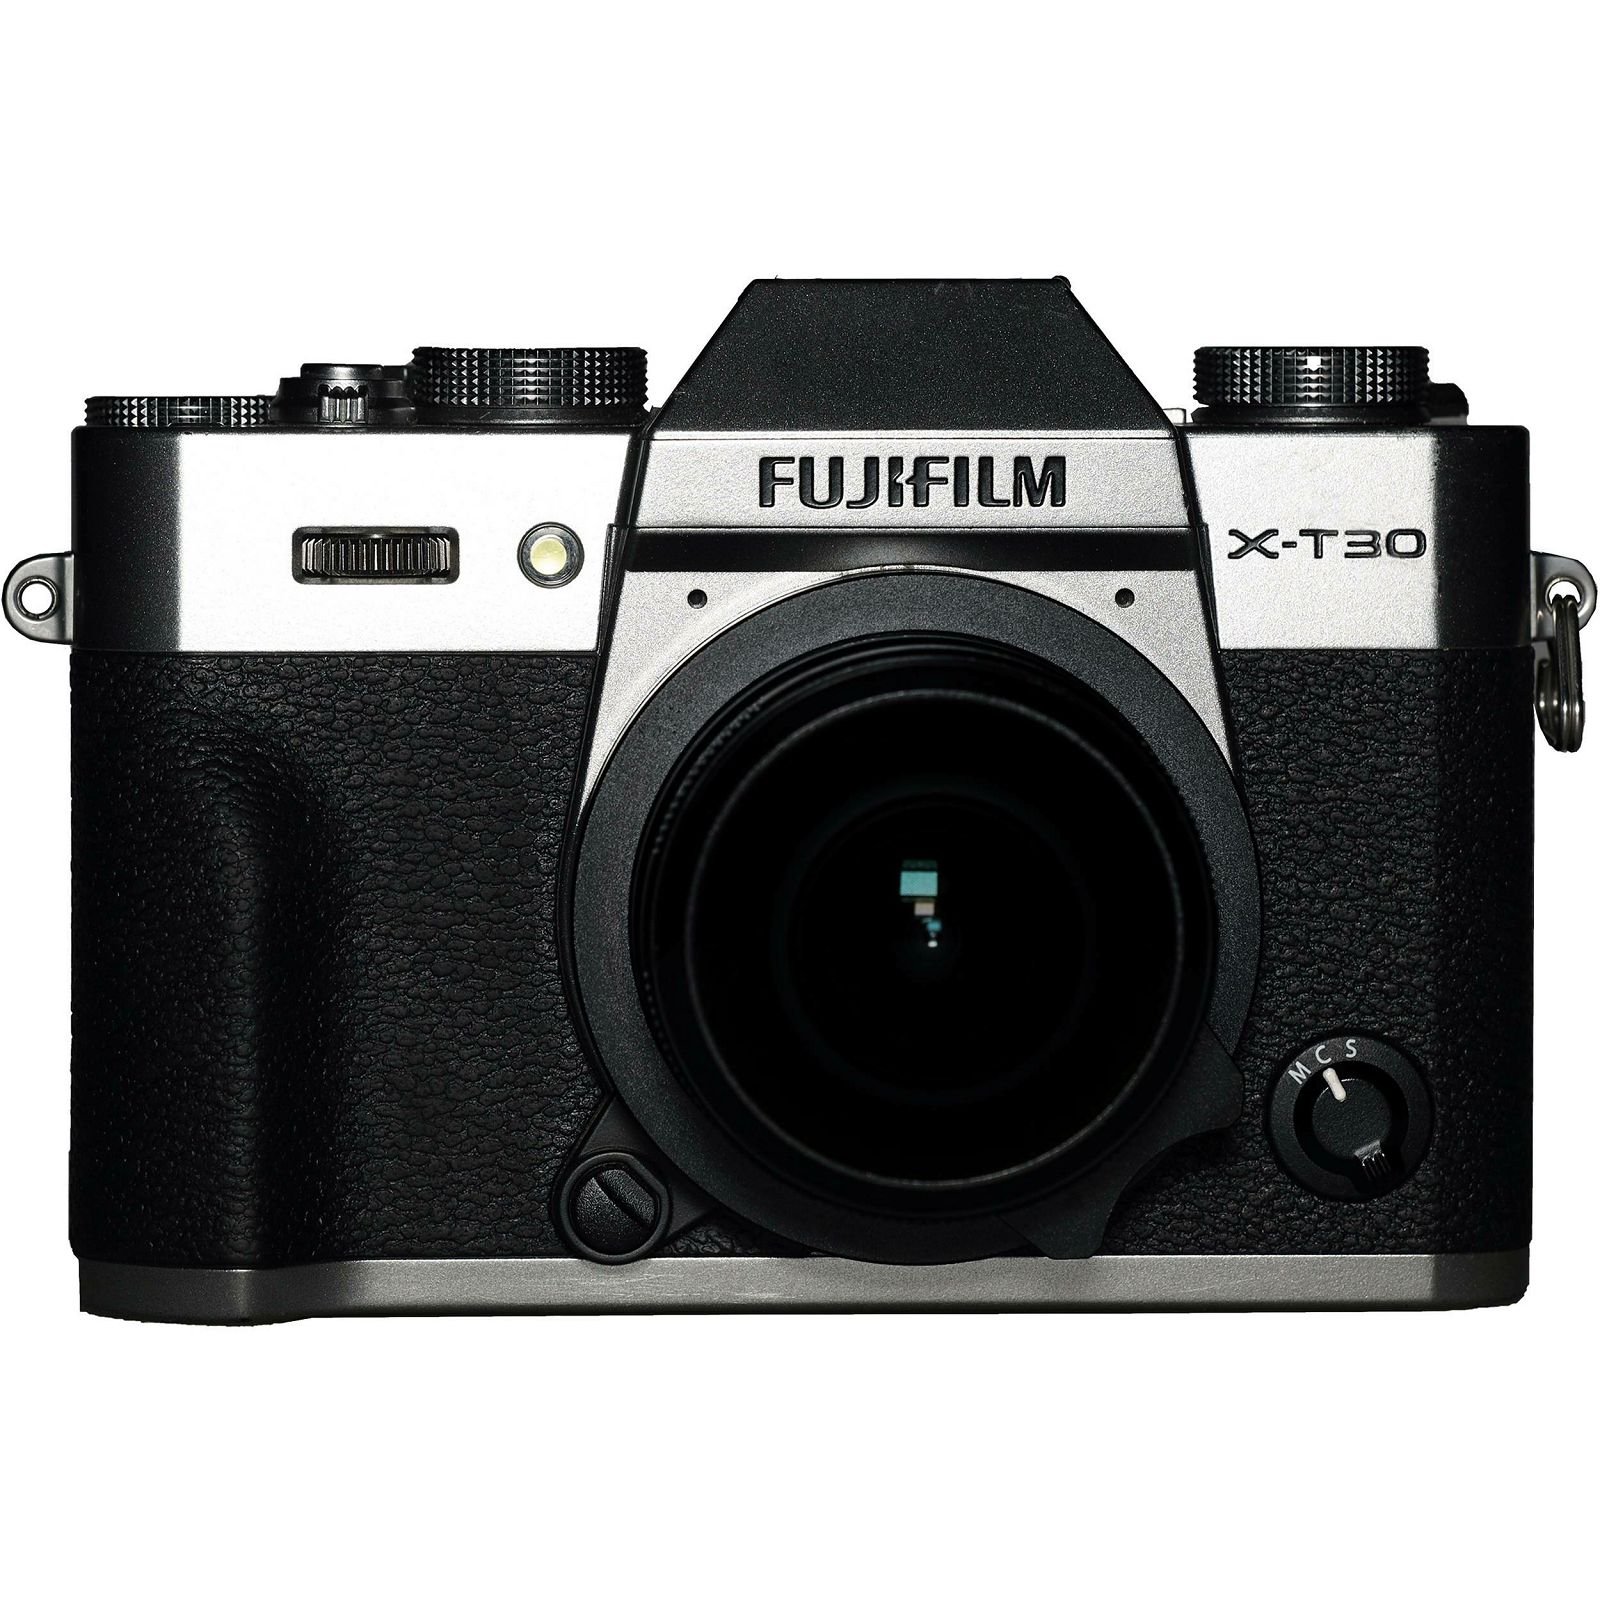 Venus Optics Laowa 4mm f/2.8 Fisheye objektiv za Fujifilm X